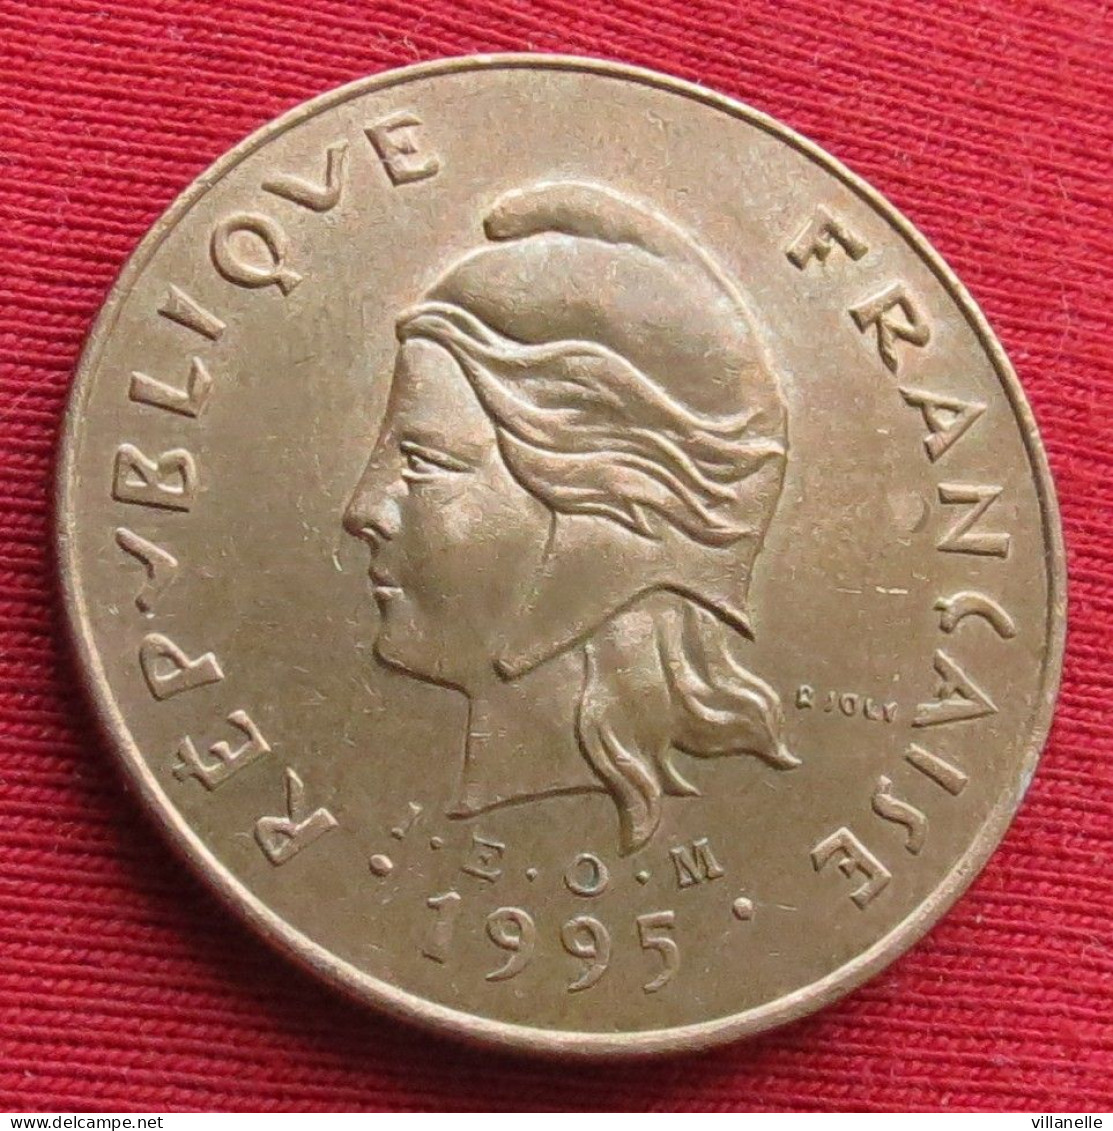 French Polynesia 100 Francs 1995 KM# 14 Lt 1567 *V1T Polynesie Polinesia - Polynésie Française